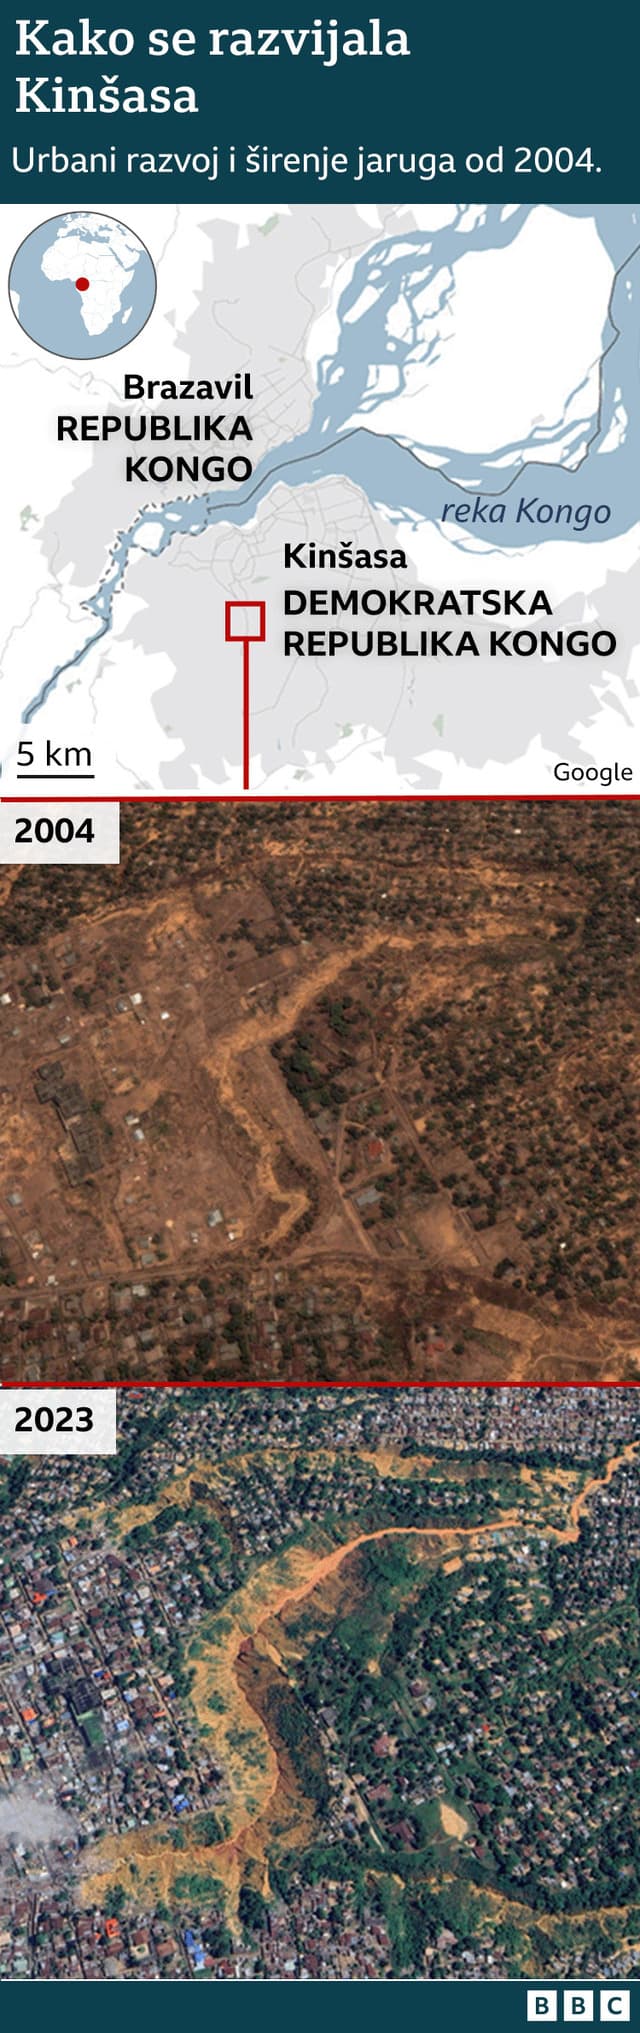 Lokator u Kinšasi i satelitski snimak iz 2004. i 2023.